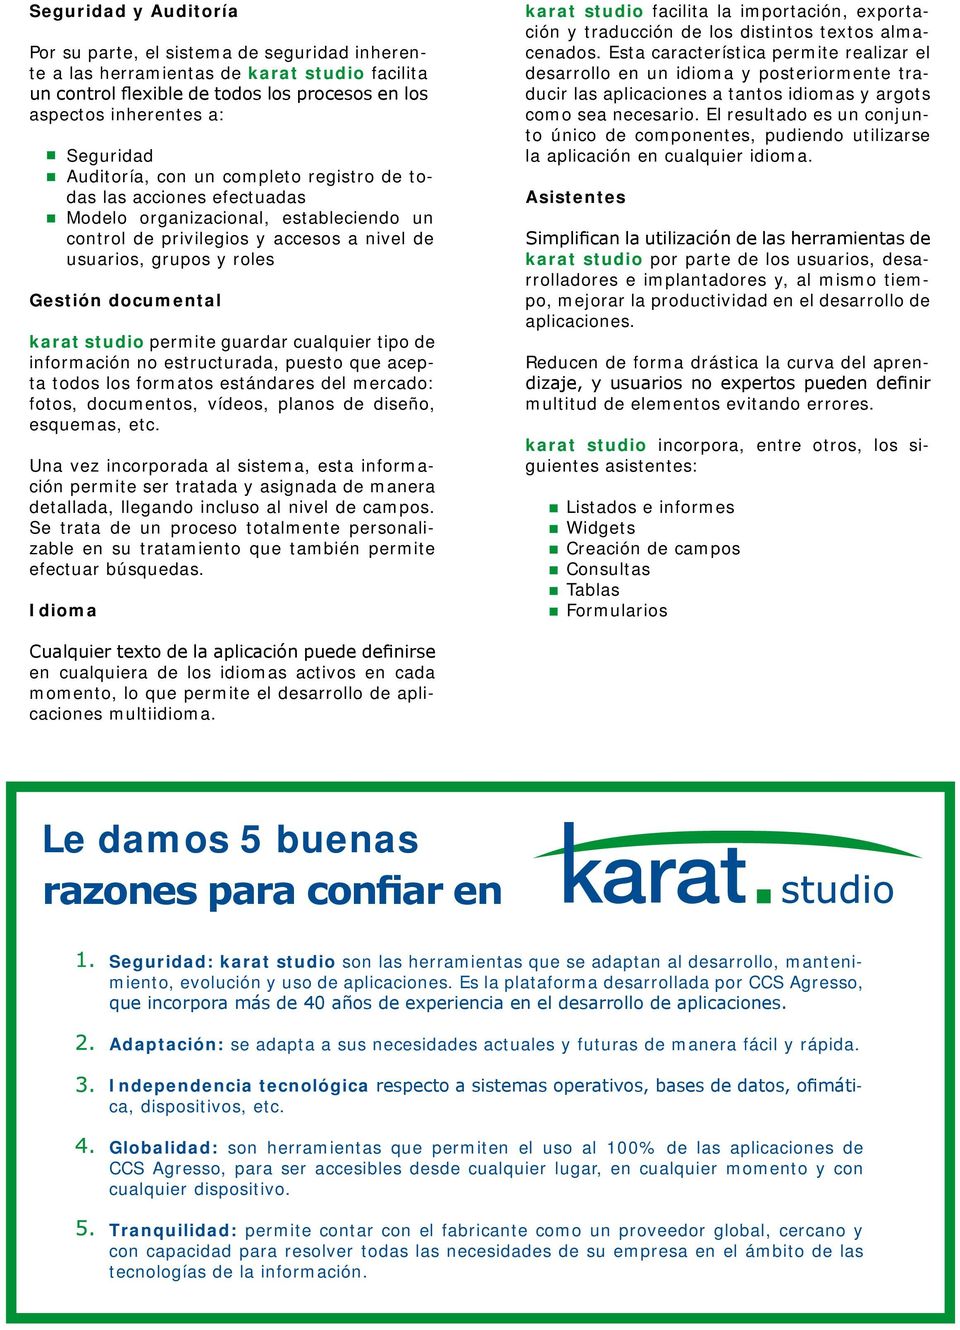 karat studio permite guardar cualquier tipo de información no estructurada, puesto que acepta todos los formatos estándares del mercado: fotos, documentos, vídeos, planos de diseño, esquemas, etc.